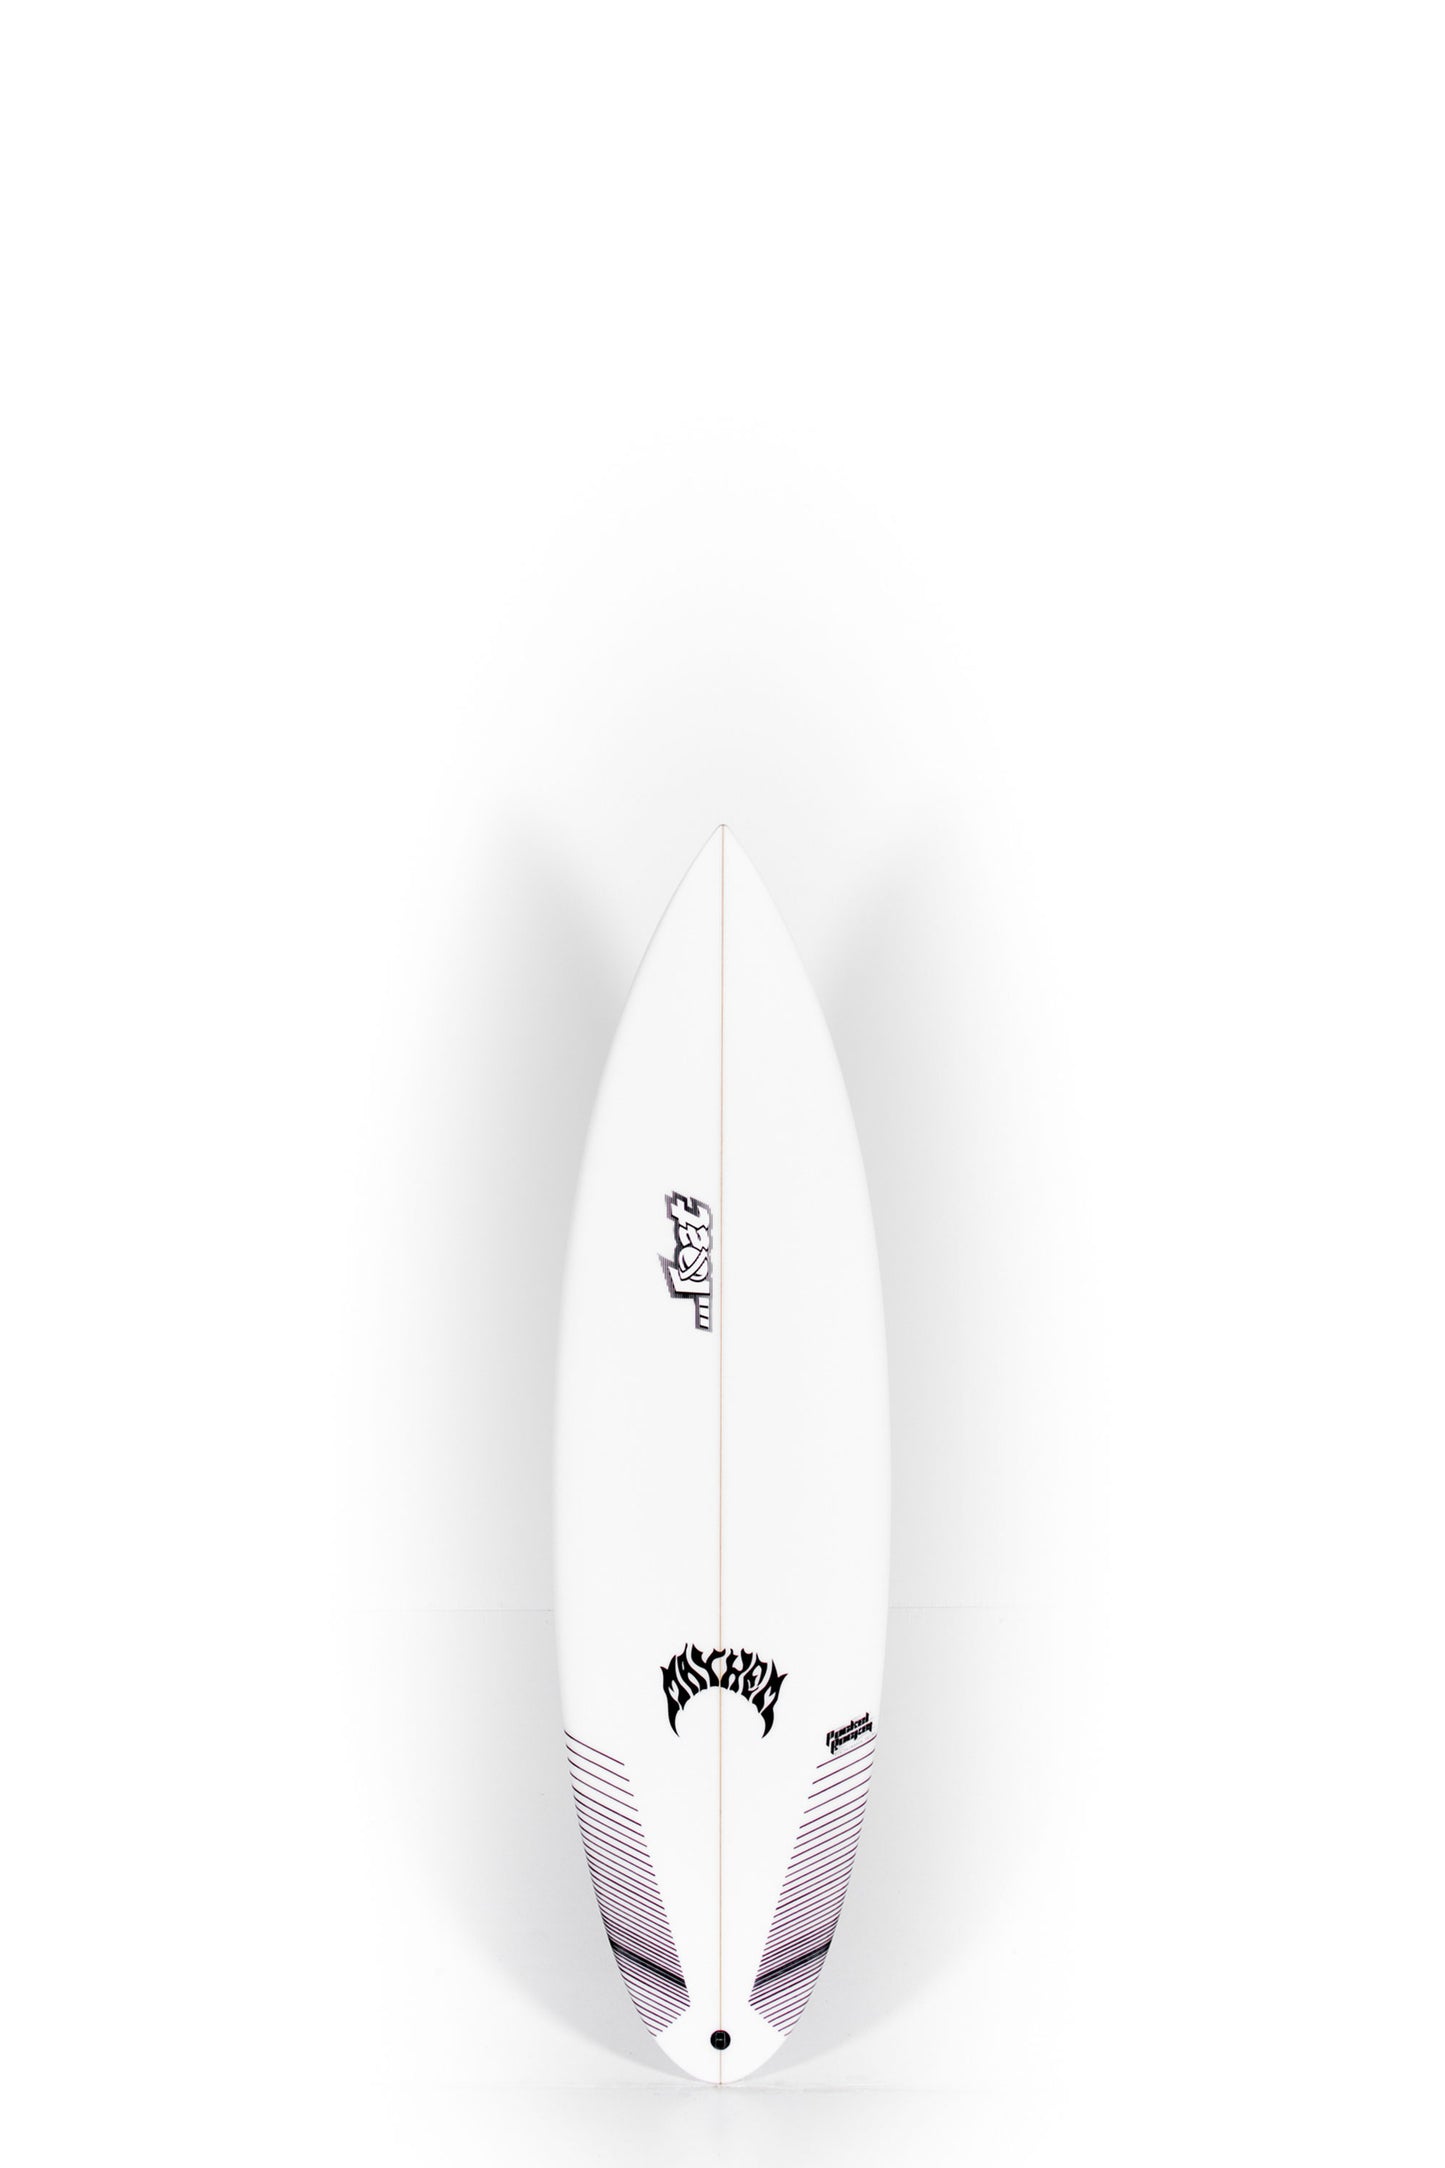 サーフィン【フィン付】LOST surfboard pocket rocket